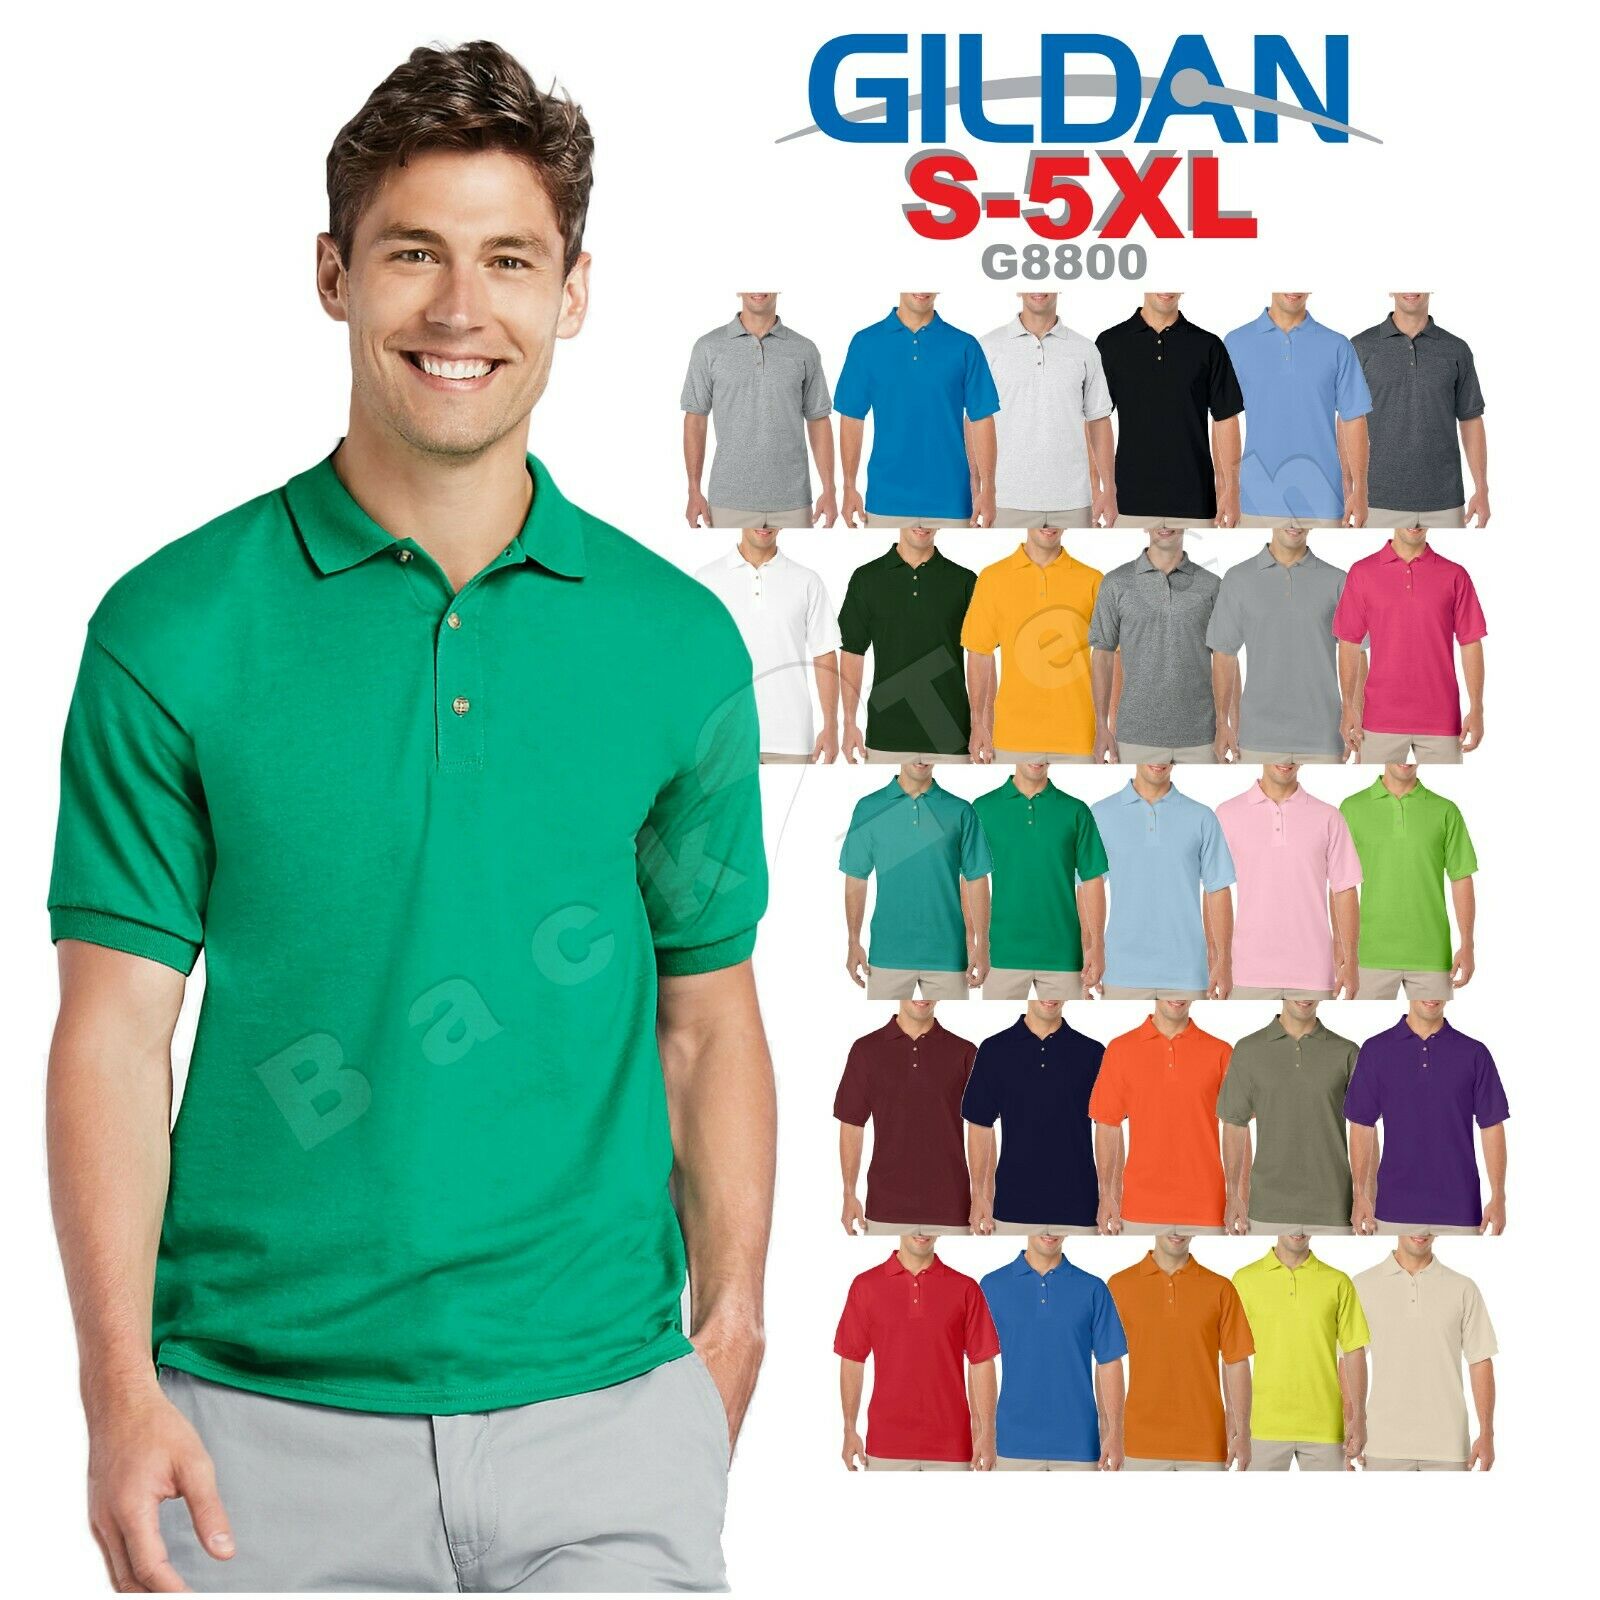 Gildan Dryblend Mens Polo Sport Shirt Jersey T-shirt 8800 Nwot Size S-5xl